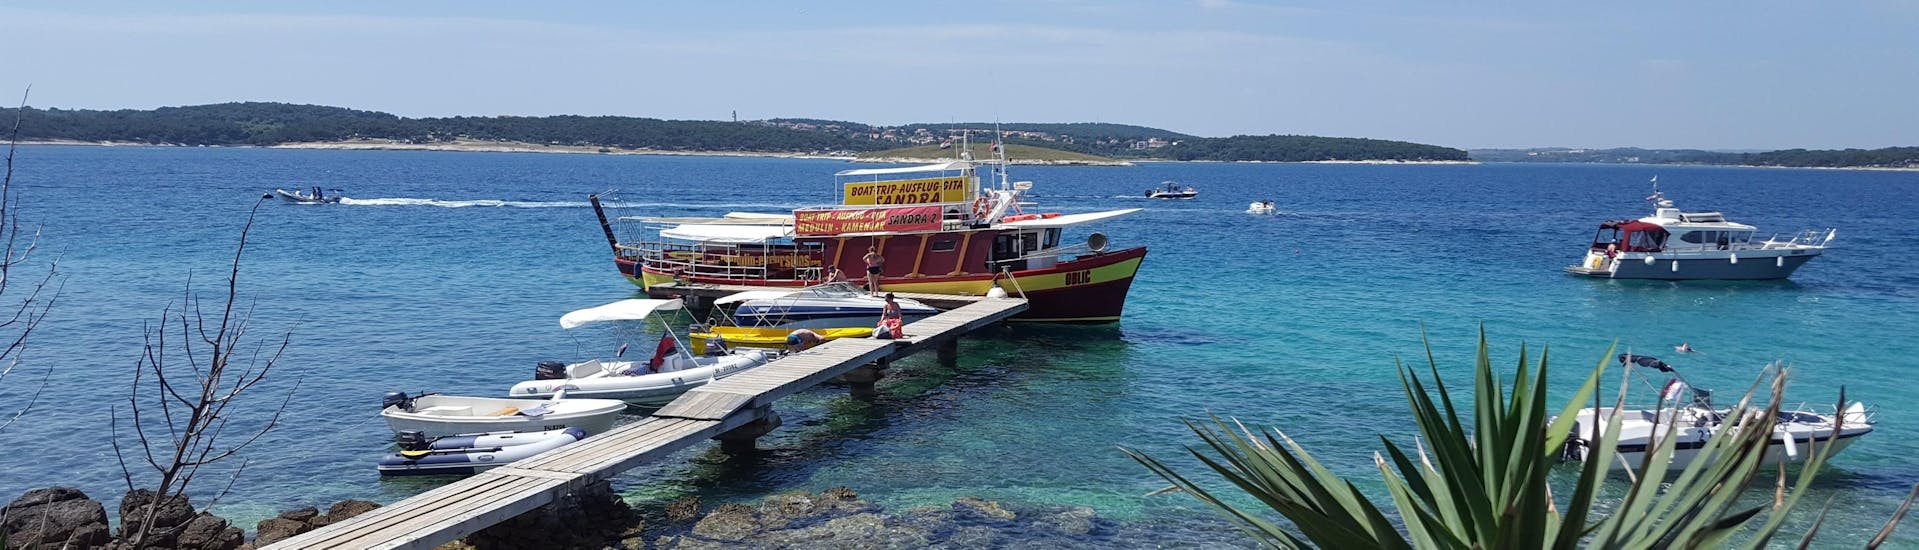 Le bateau de Medulin Excursions est amarré à l'embarcadère pendant que les participants à la balade en bateau privé au Cap Kamenjak depuis Medulin montent à bord.